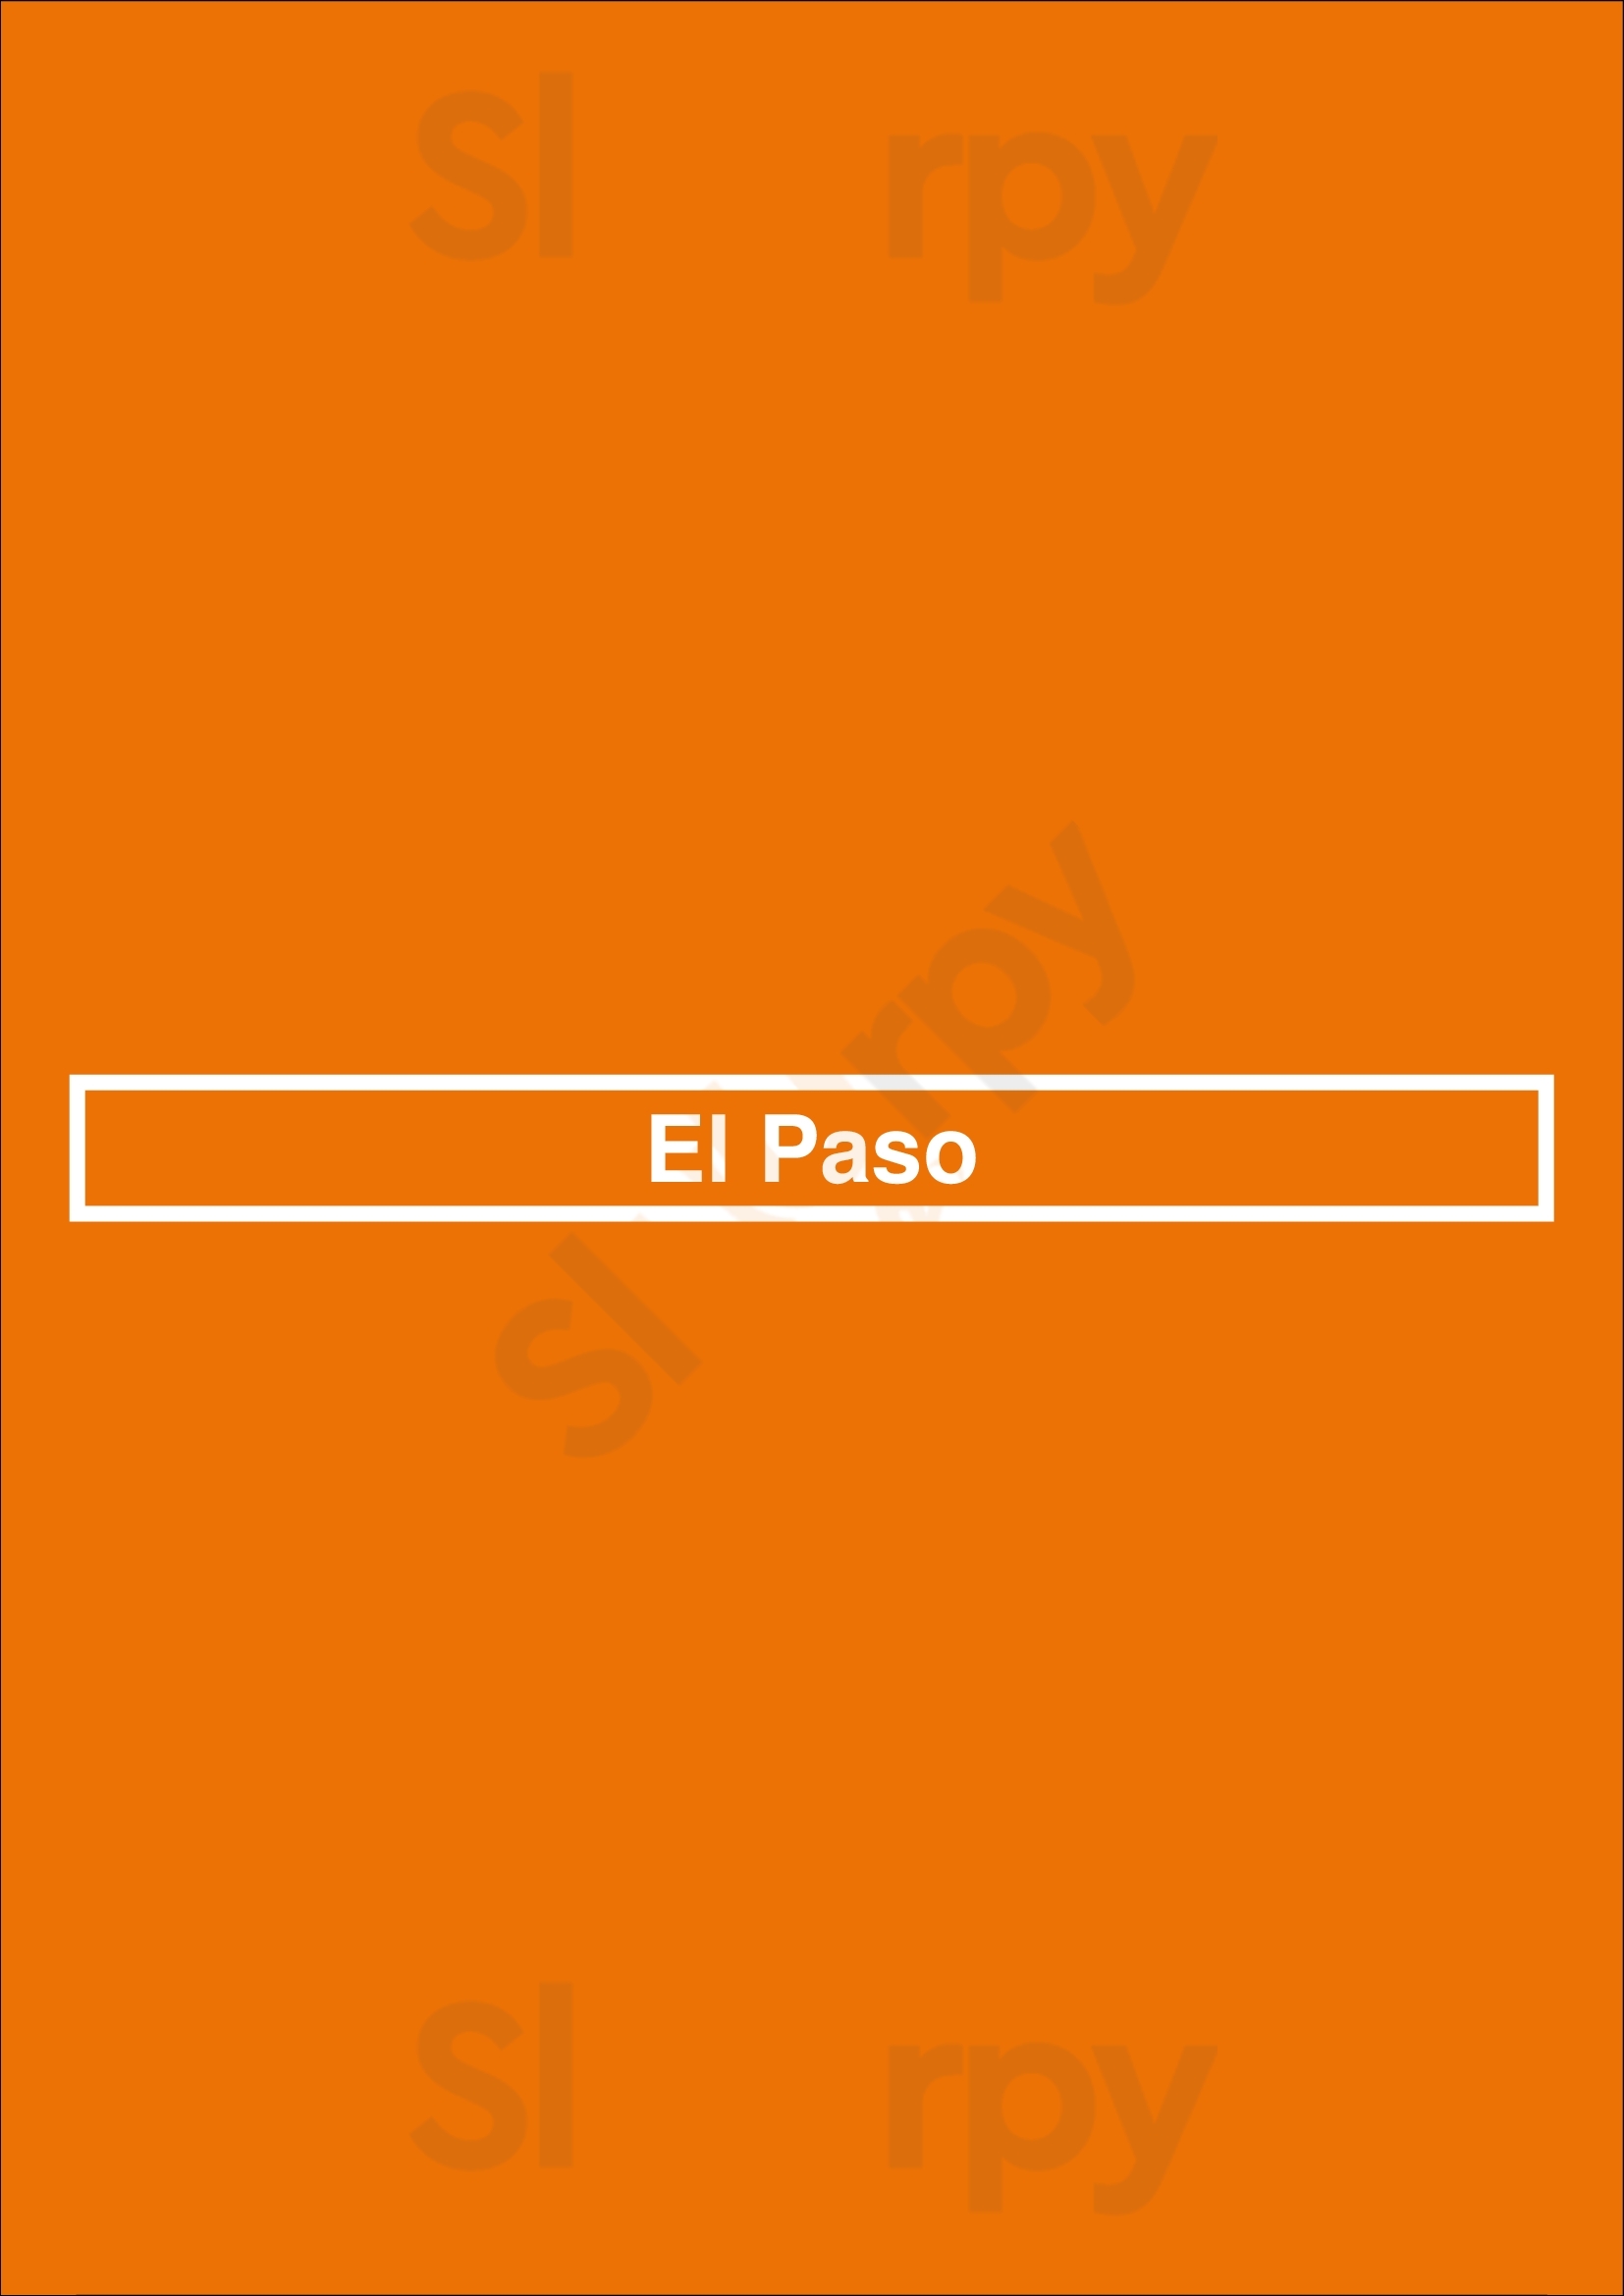 El Paso New York City Menu - 1